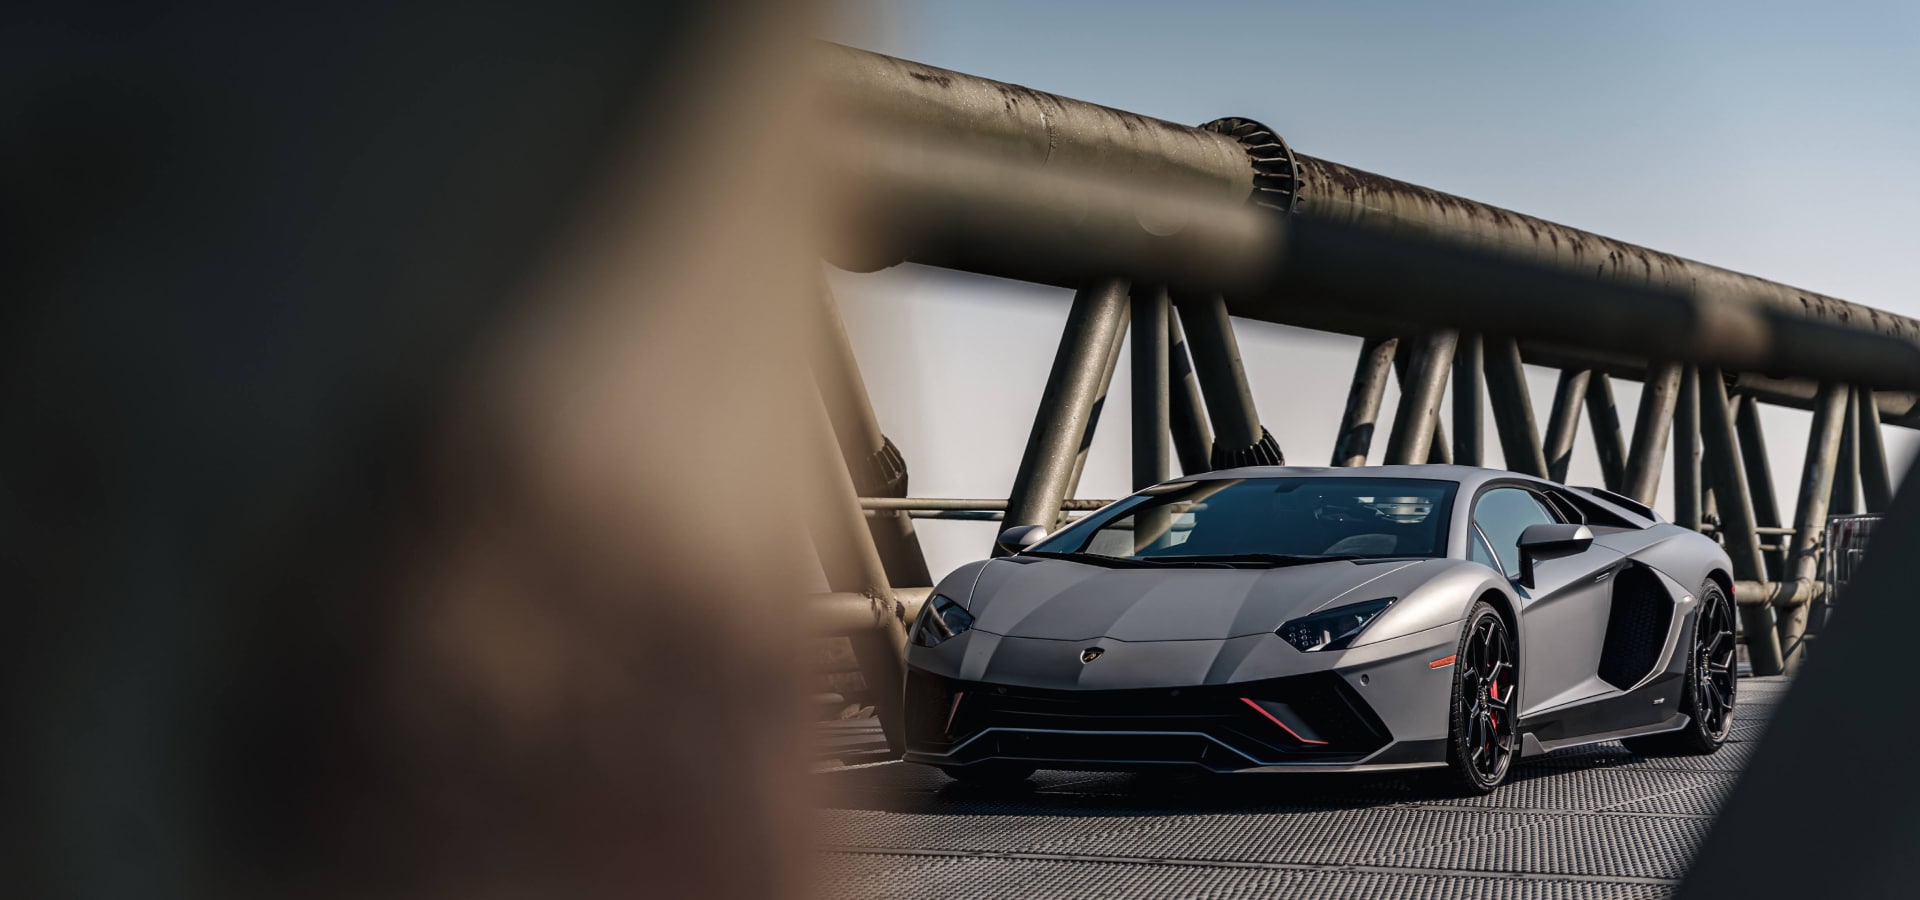 Aventador Ultimate | Lamborghini.com